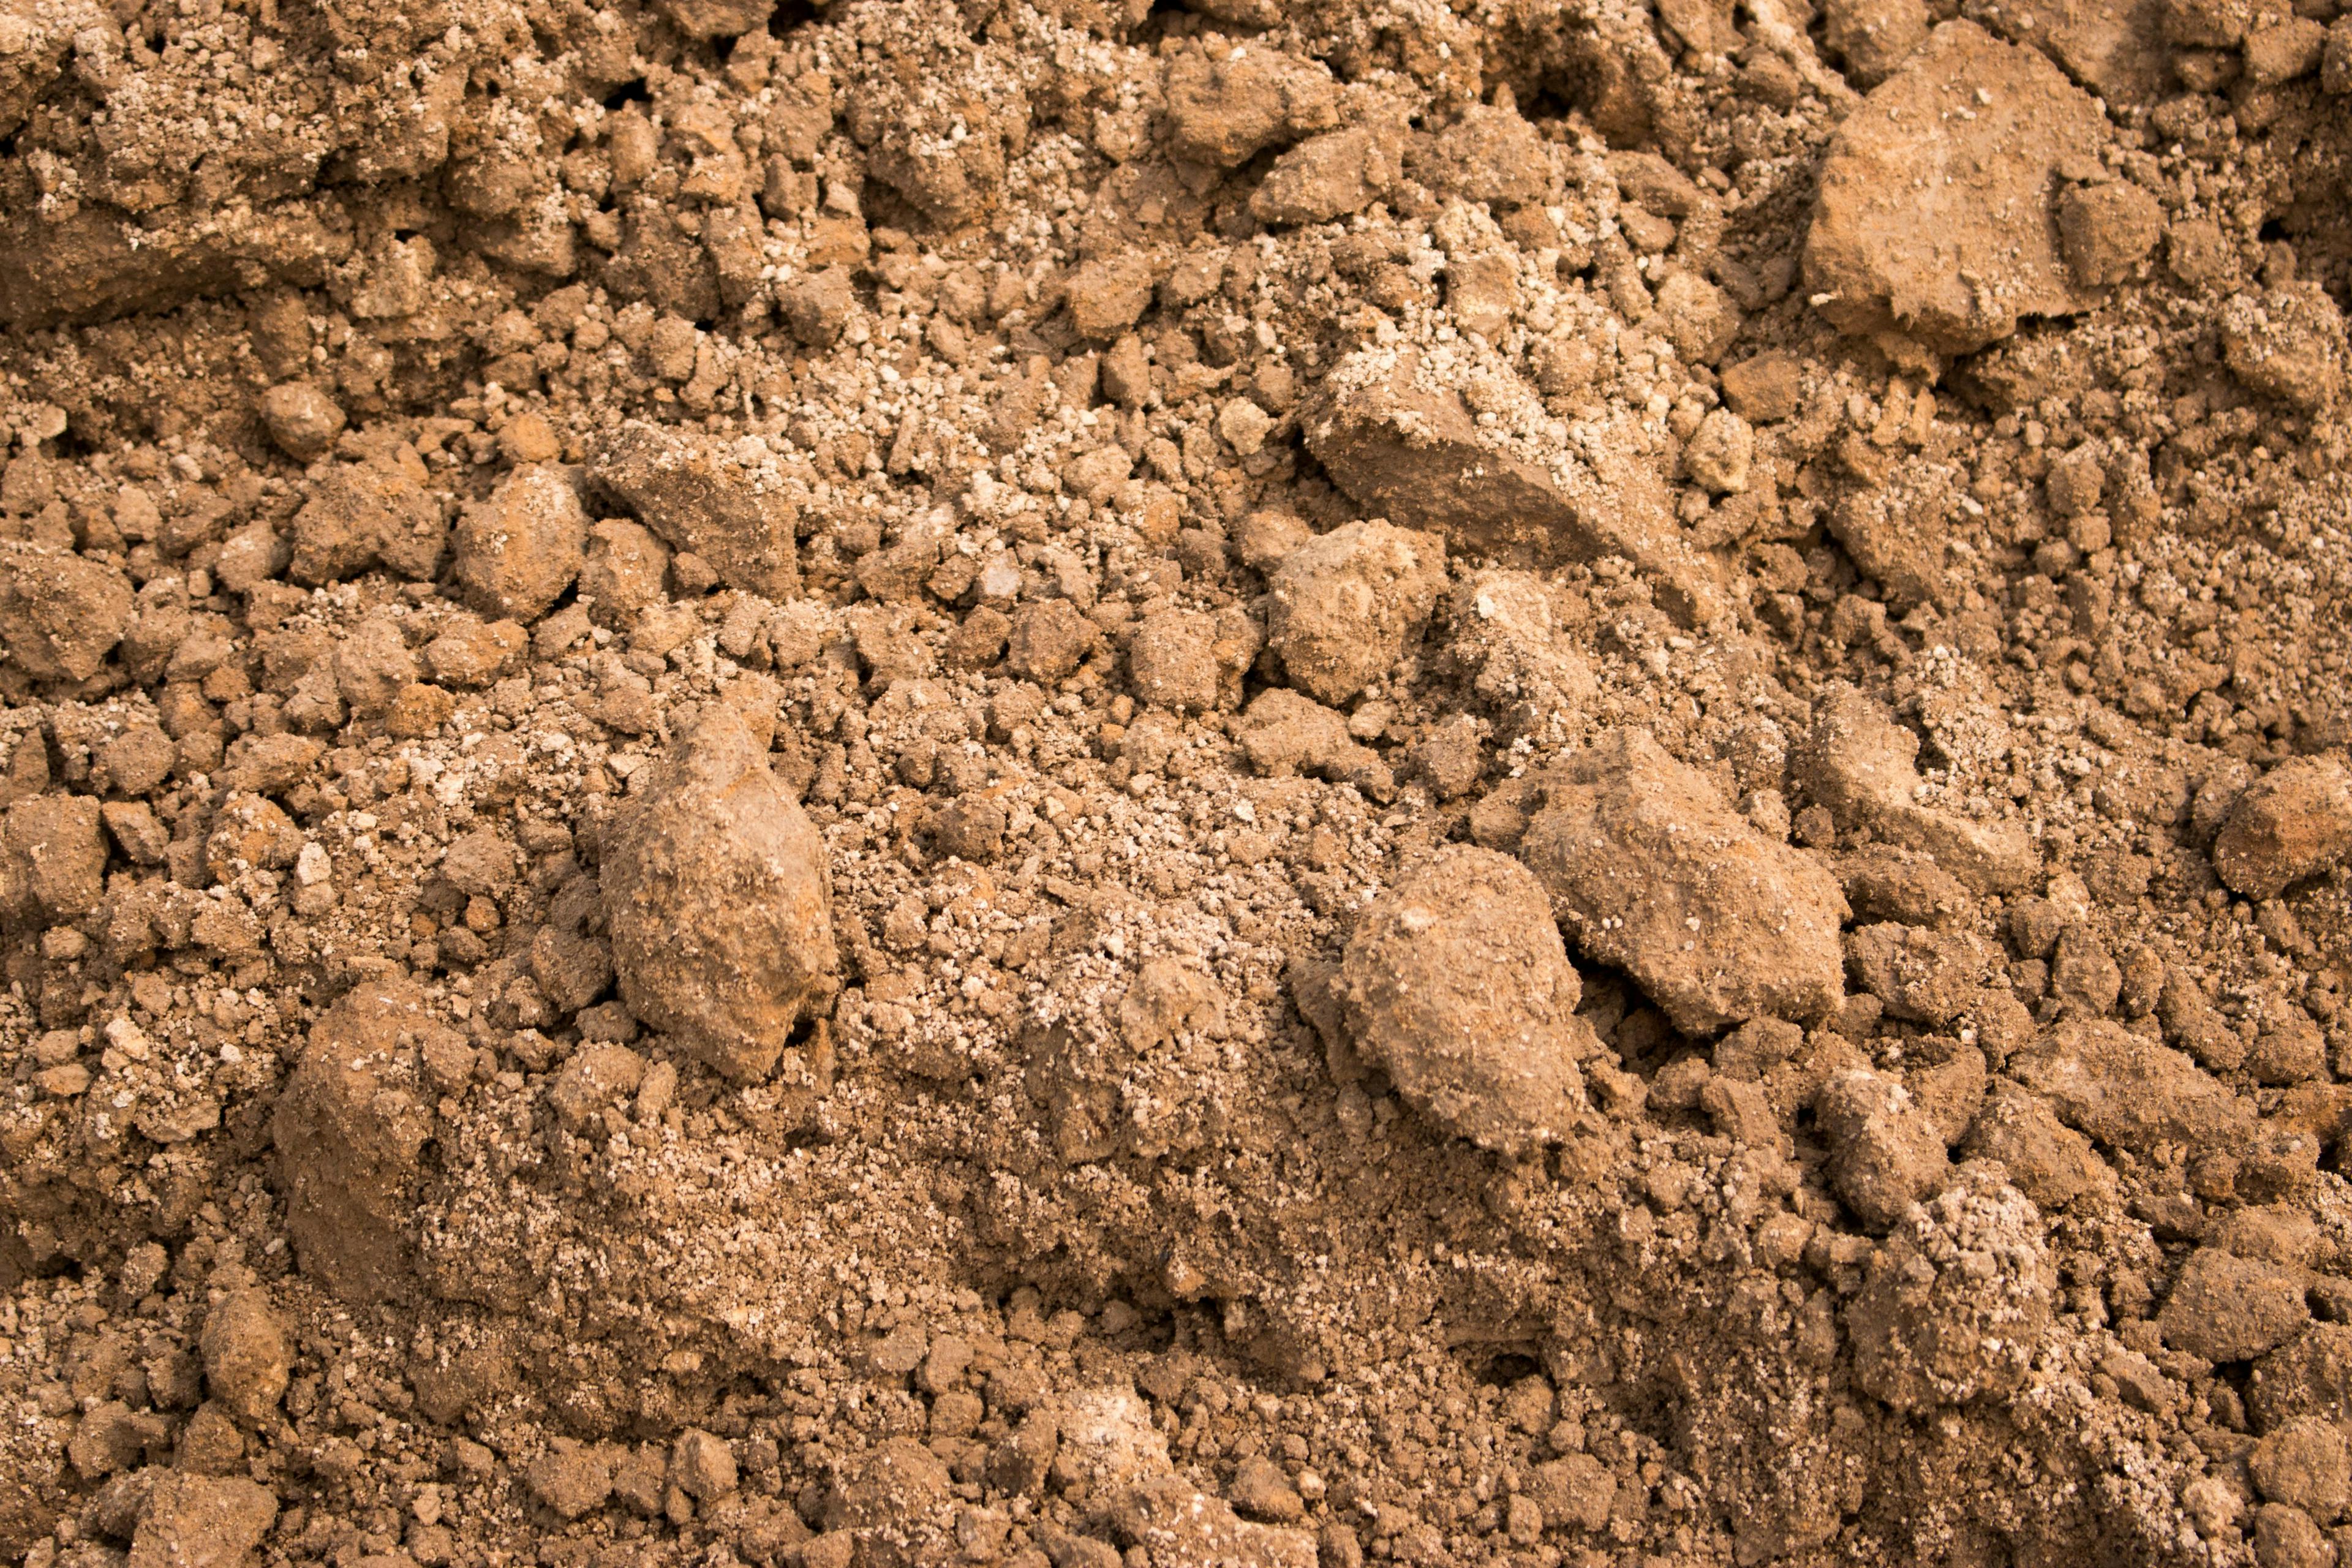 sandy loam soil ground By Dmytro - stock.adobe.com